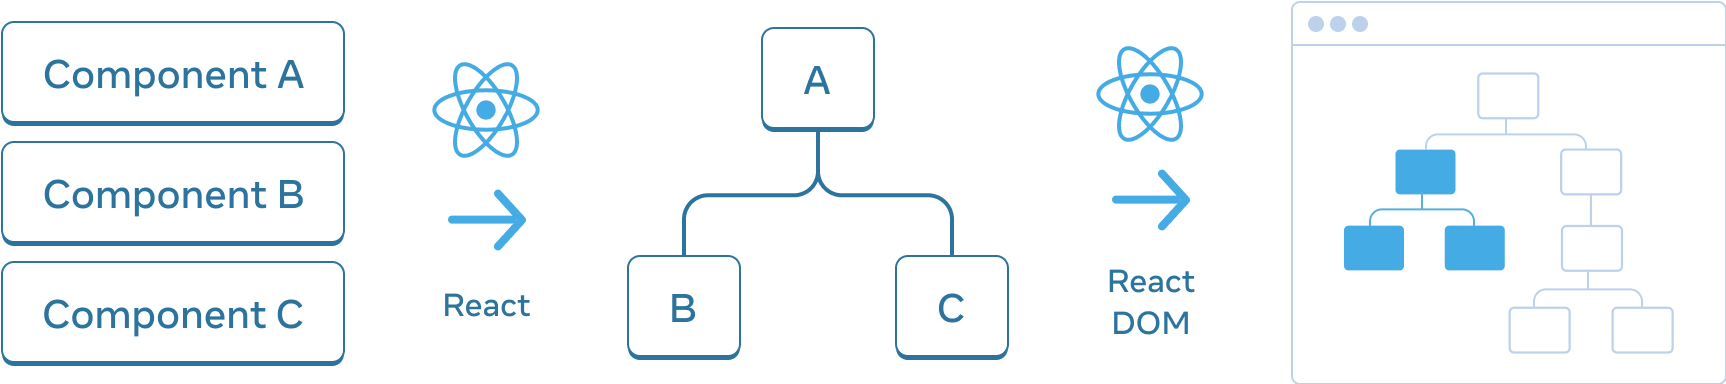 Un diagramme avec trois sections disposées horizontalement. Dans la première section, on trouve trois rectangles empilés verticalement, avec pour libellés « Composant A », « Composant B » et « Composant C ». Une flèche libellée « React », avec le logo React, fait la transition vers le panneau suivant. La section du milieu contient un arbre de composants, avec une racine libellée « A » et deux enfants libellés « B » et « C ». Une flèche libellée « React DOM », là encore avec le logo React, fait la transition vers le dernier panneau. Cette troisième section représente une maquette du navigateur contenant un arbre avec 8 nœuds, dont seul un sous-ensemble est mis en avant (qui représente l’arbre de la section du milieu).